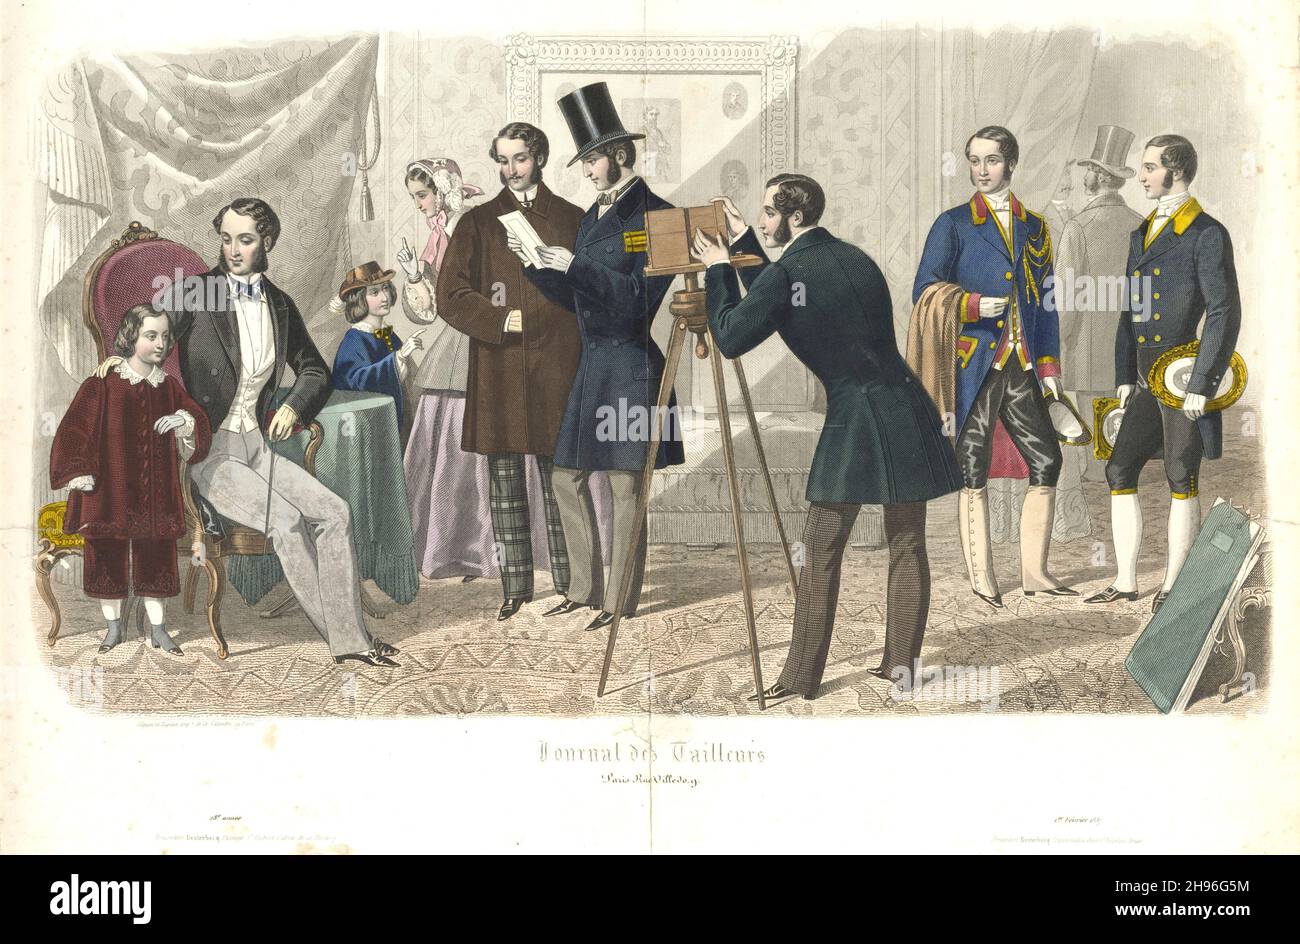 Assiette de la publication française « Journal des Tailleurs », 1857. Banque D'Images